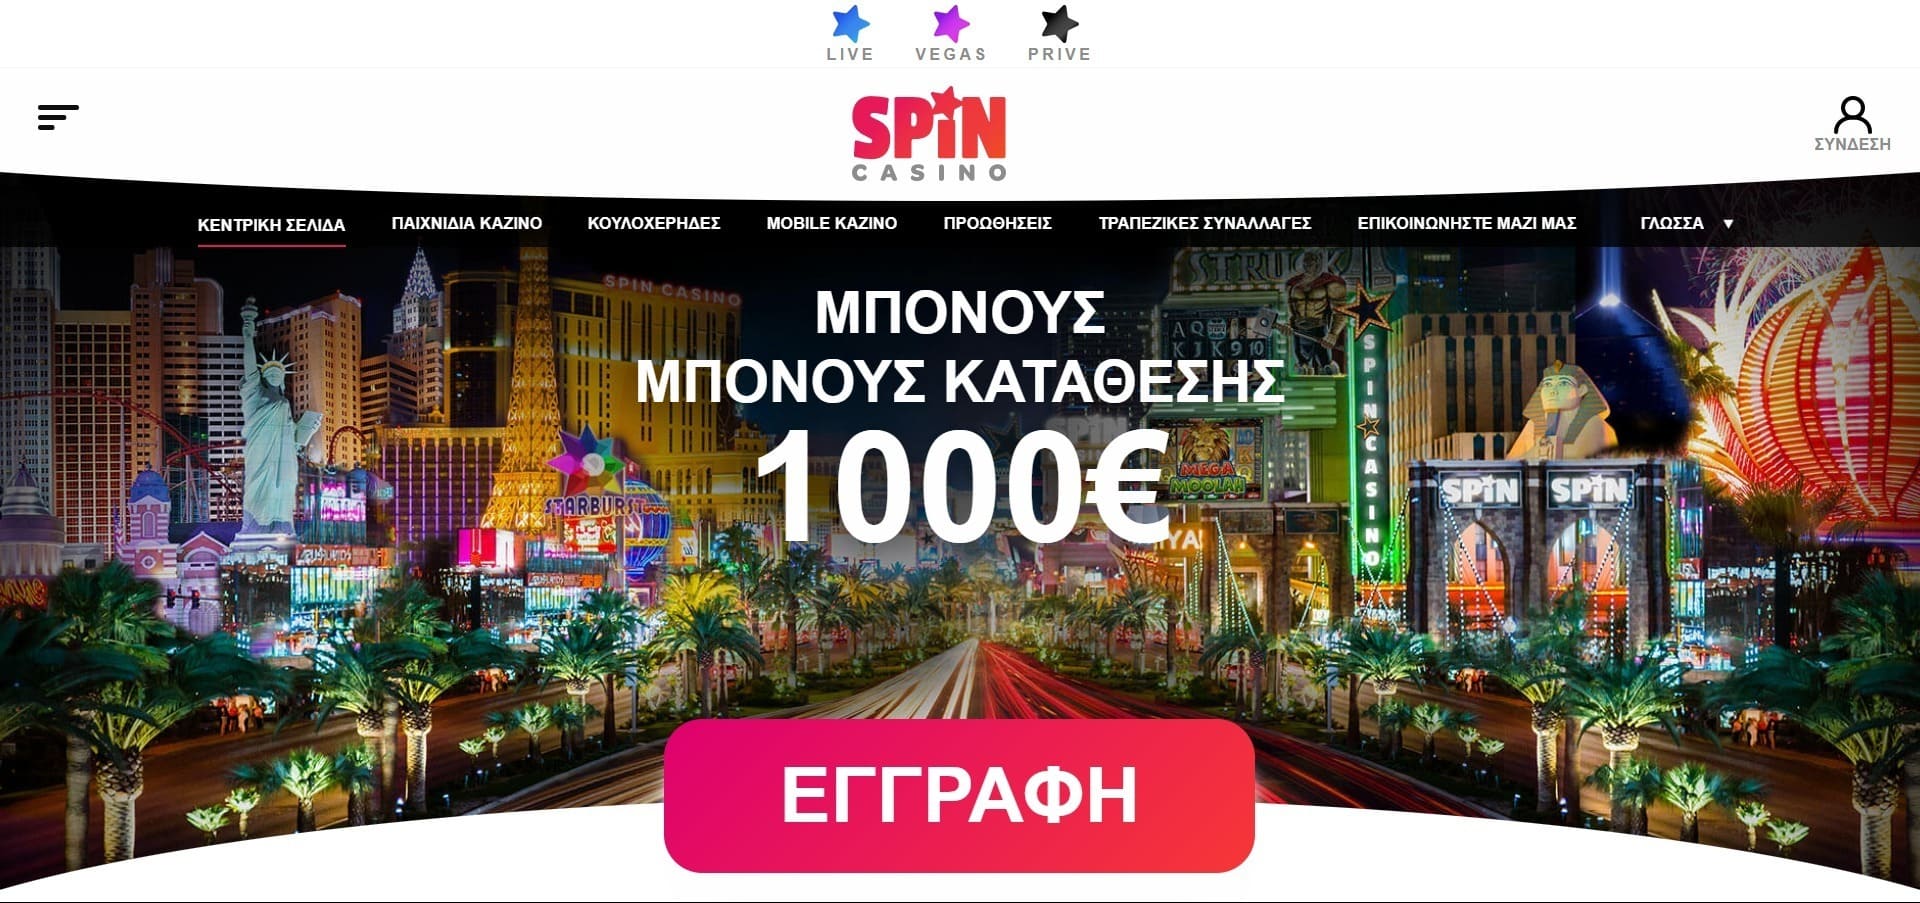 Επίσημος ιστότοπος της Spin casino